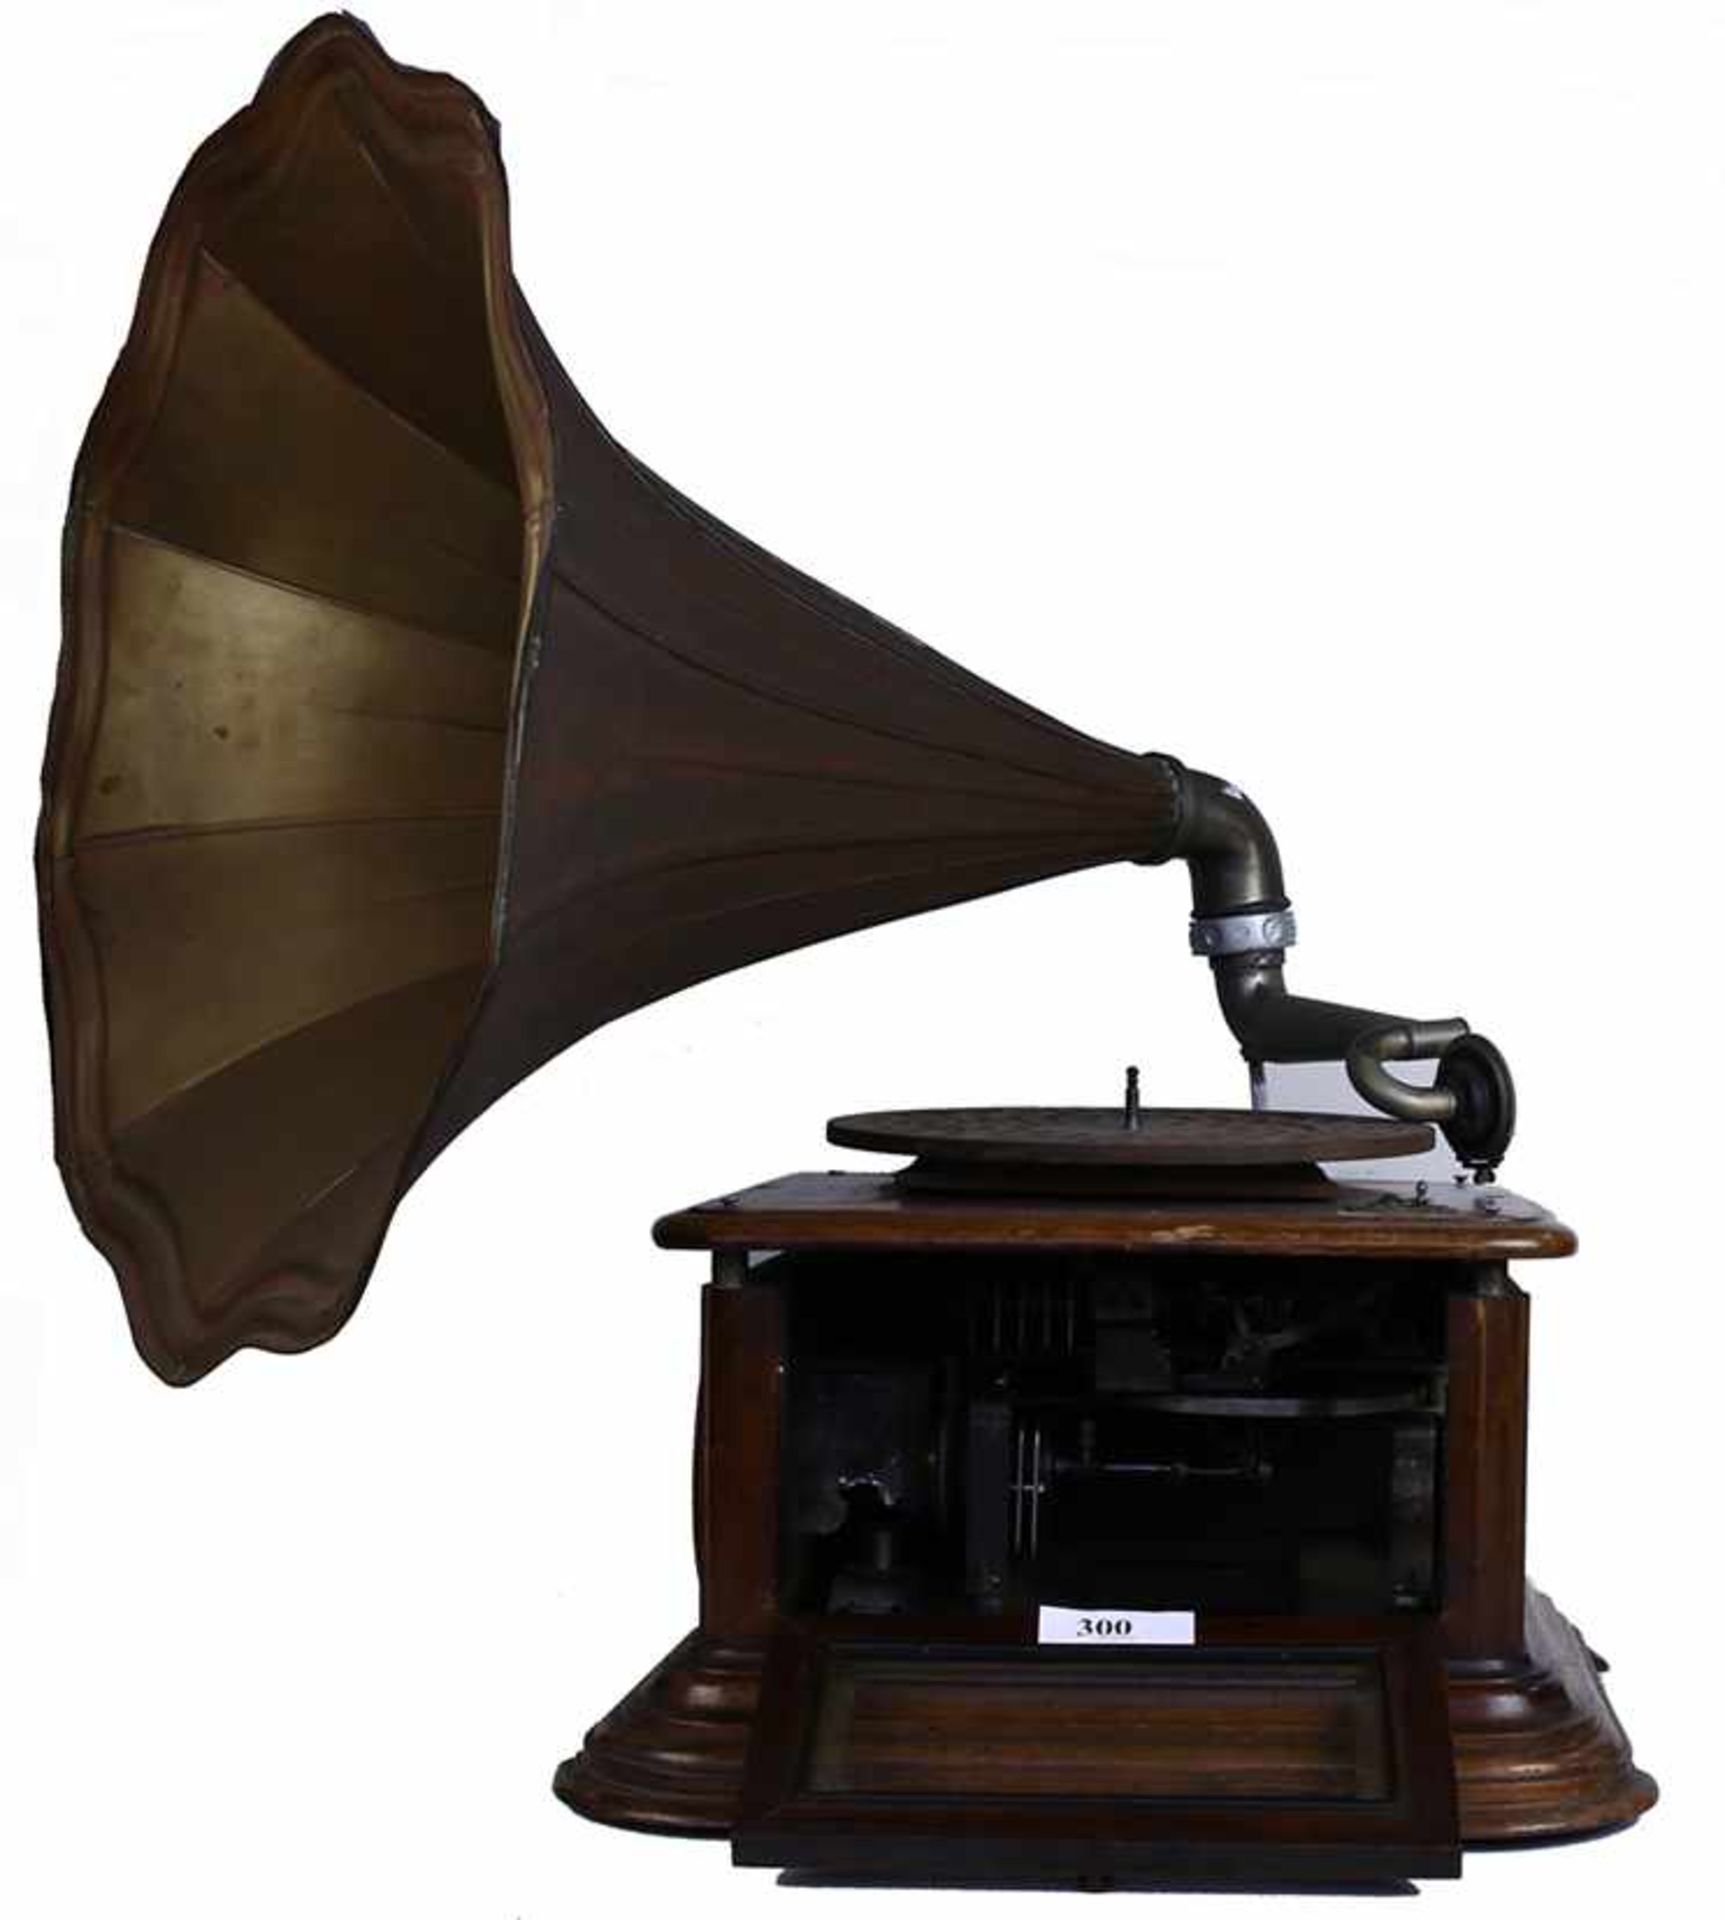 Hoorngrammofoon, Paillard - Grammofoon met heteluchtmotor met koperen hoorn (dm 60 cm), Zwitserland,